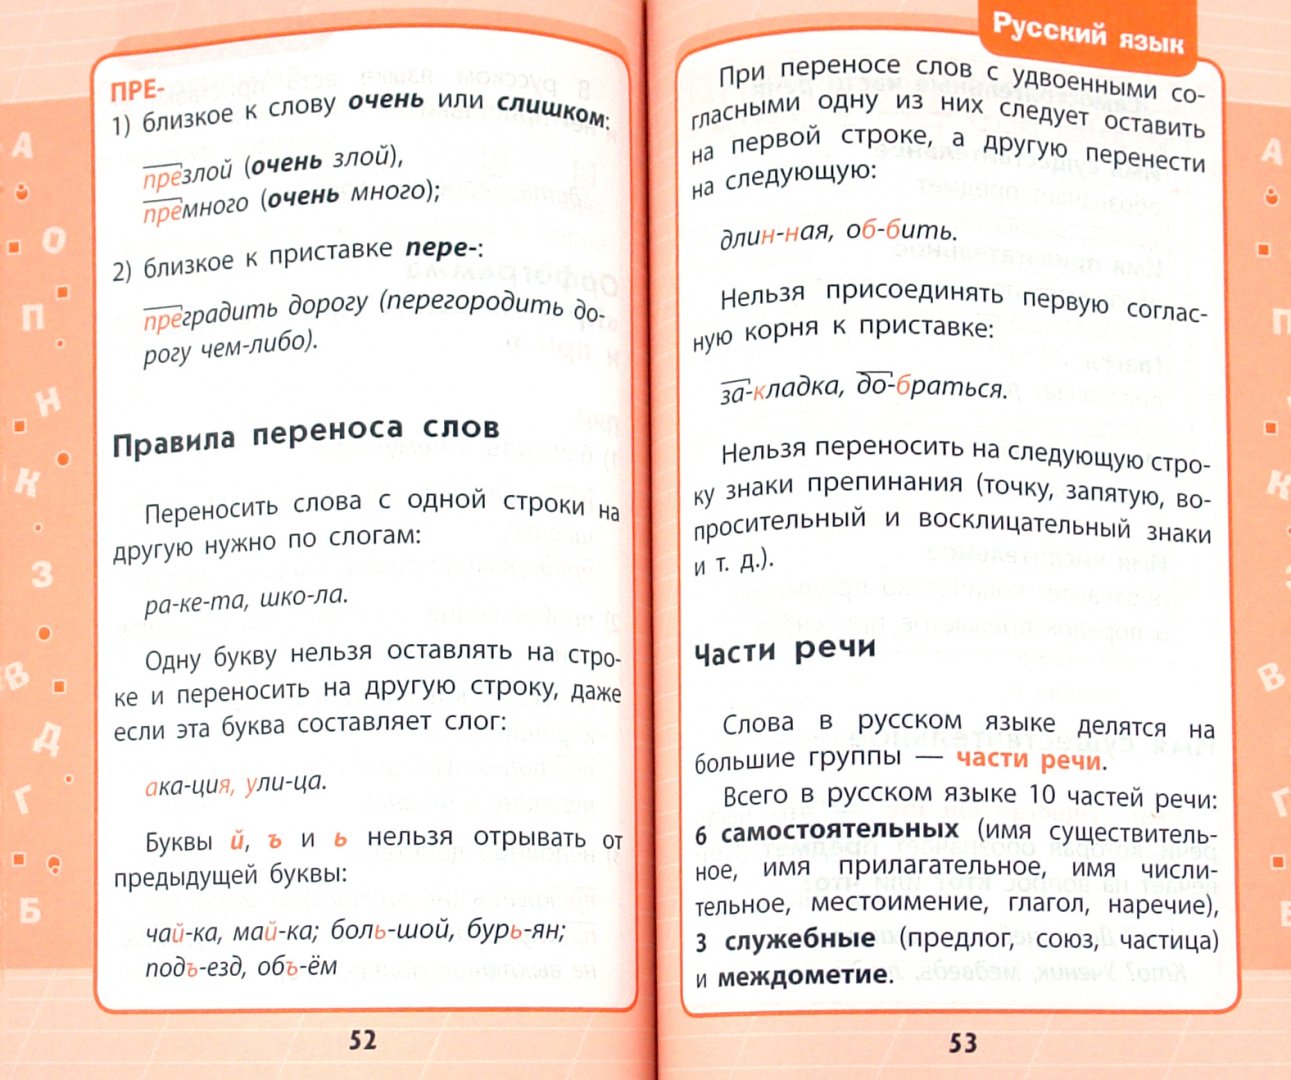 Иллюстрация 1 из 10 для Русский язык: 1-4 классы в схемах и таблицах - Елена Бескоровайная | Лабиринт - книги. Источник: Лабиринт